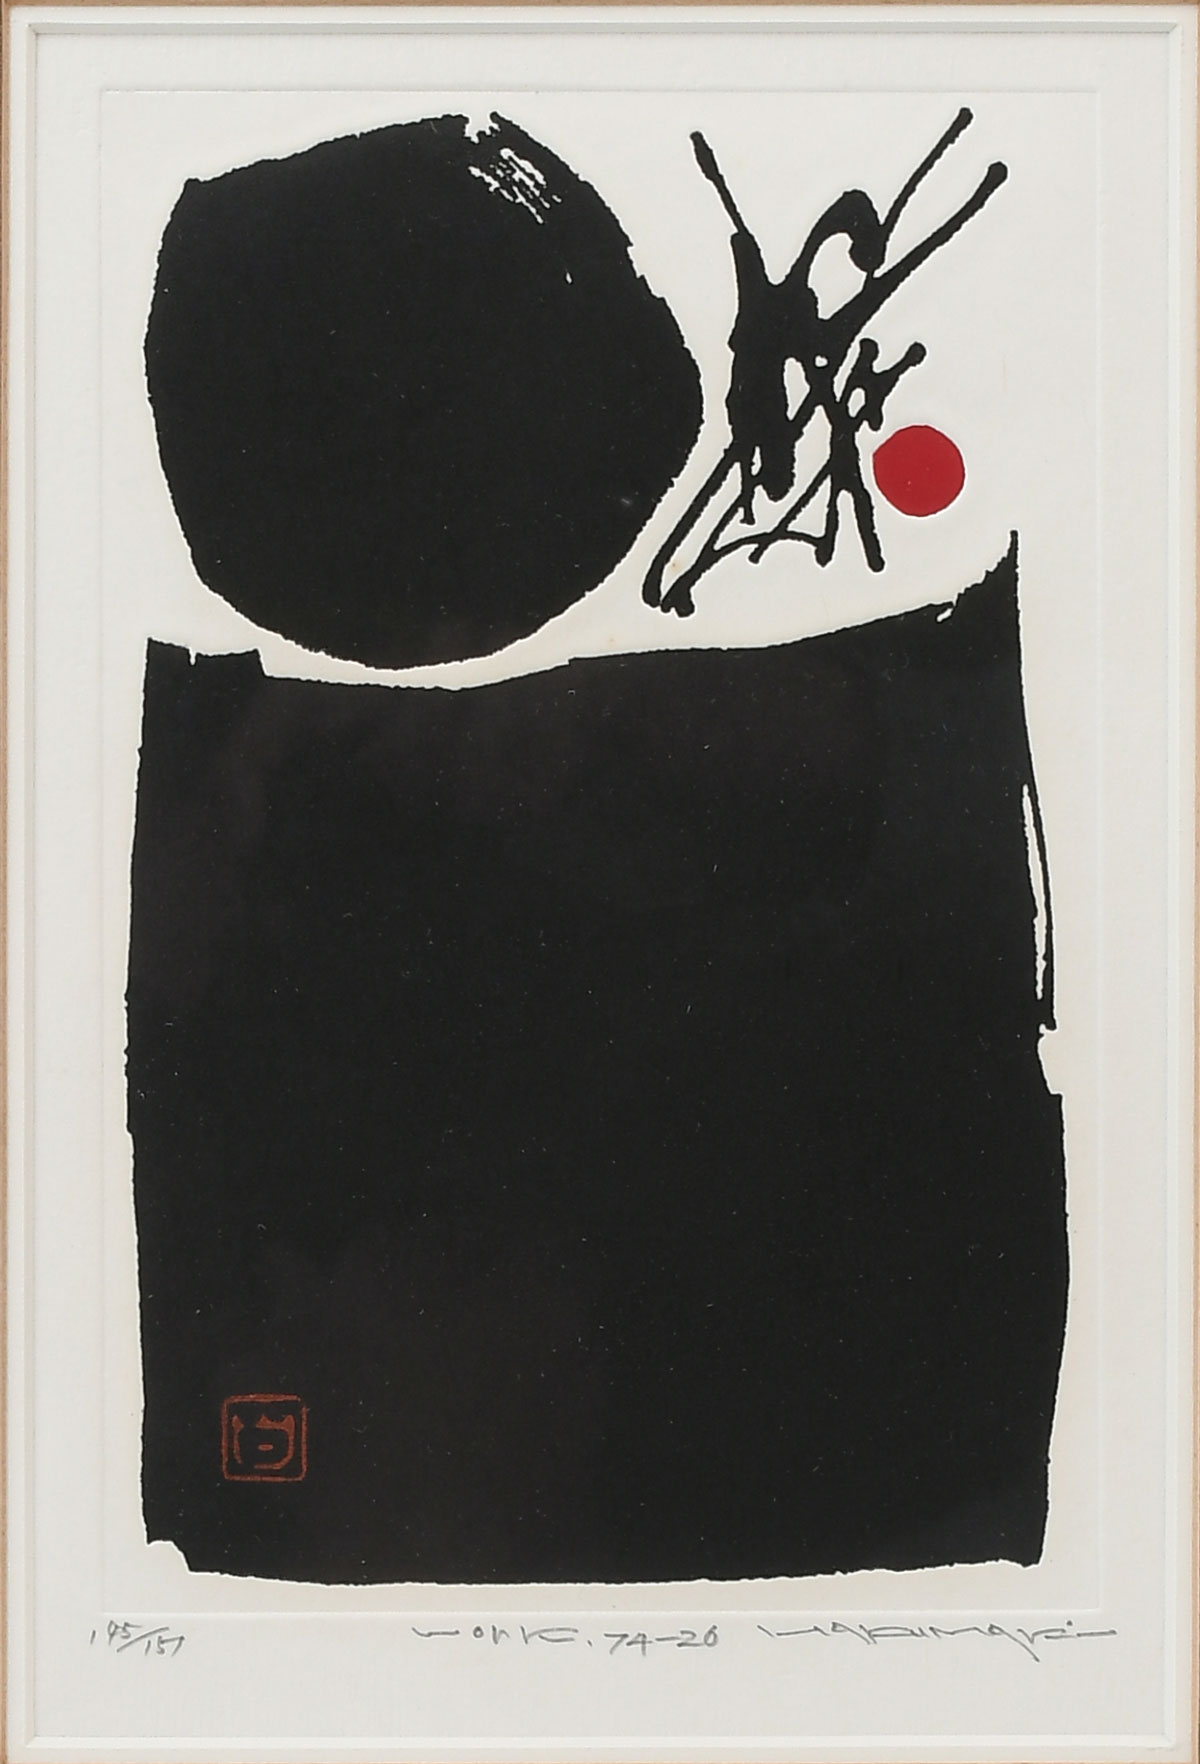 HAKU, Maki, (Japanese, 1924-2000):